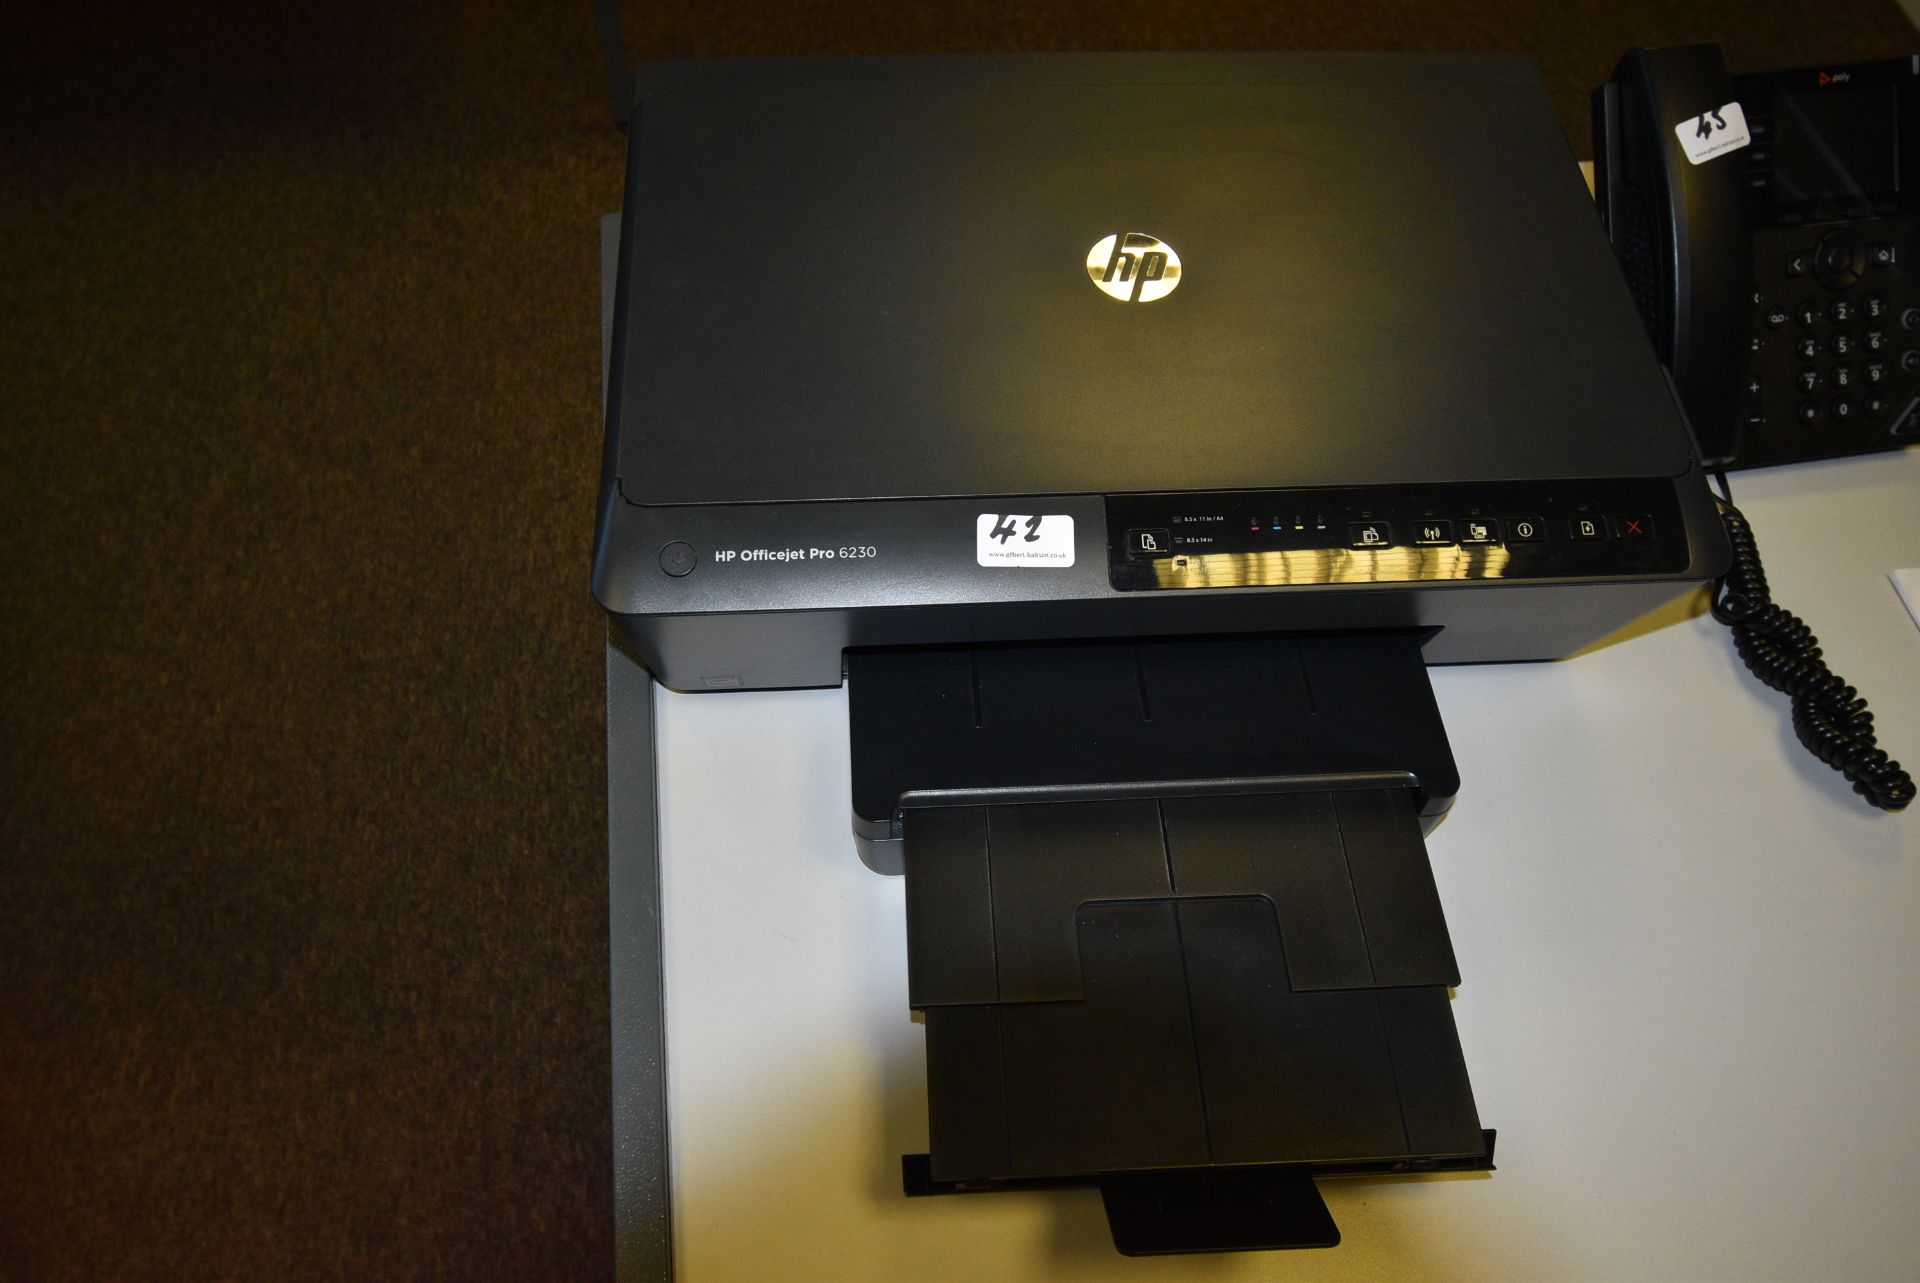 *HP Pro 6230 AIO Printer